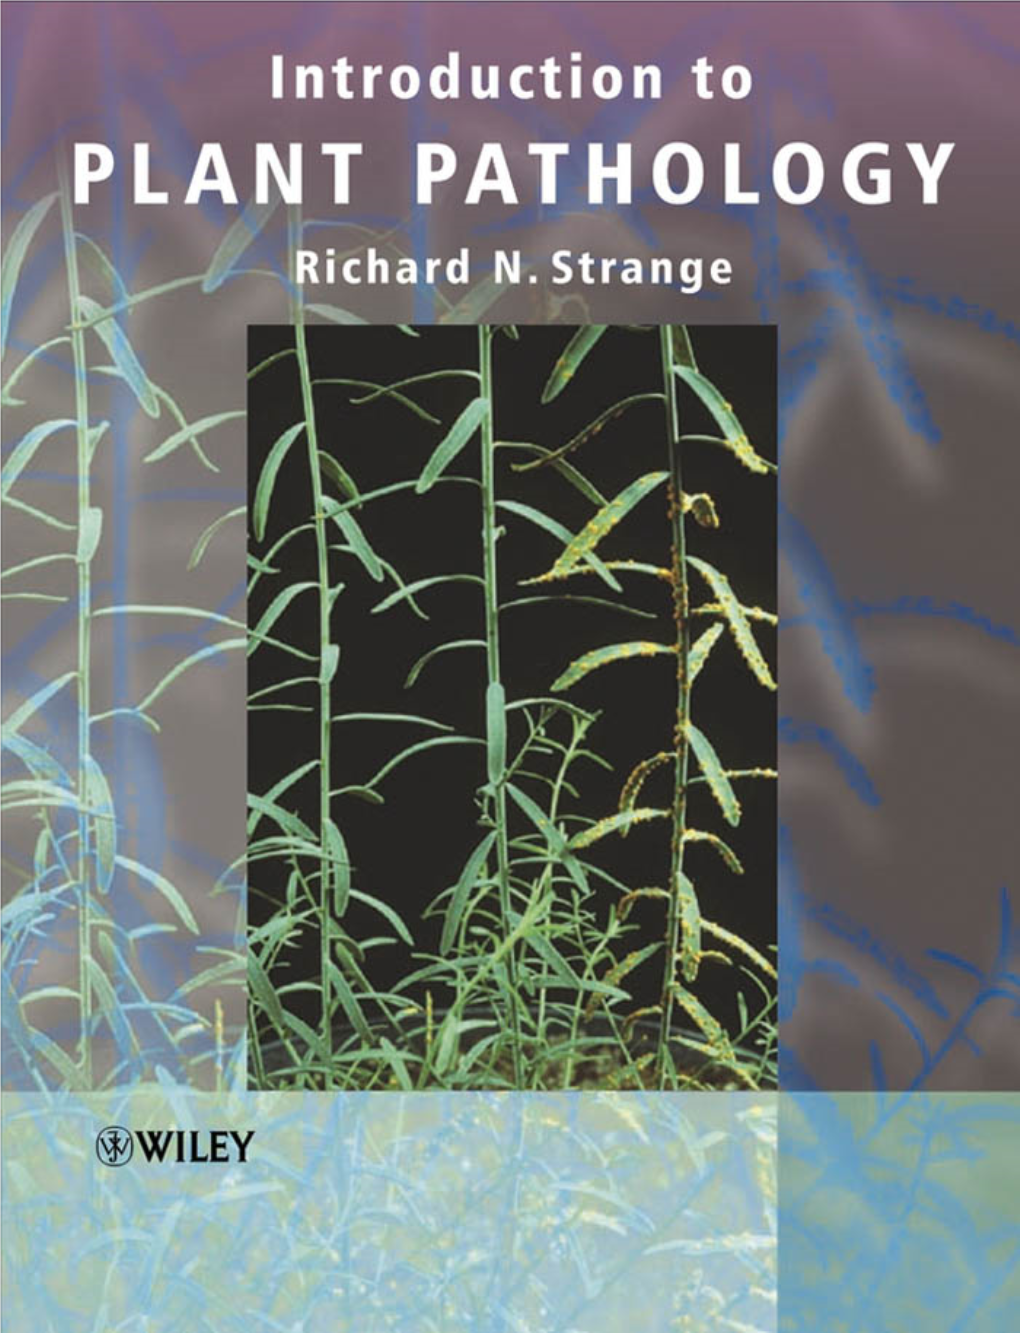 Introduction to Plant Pathology {Richard N. Strange